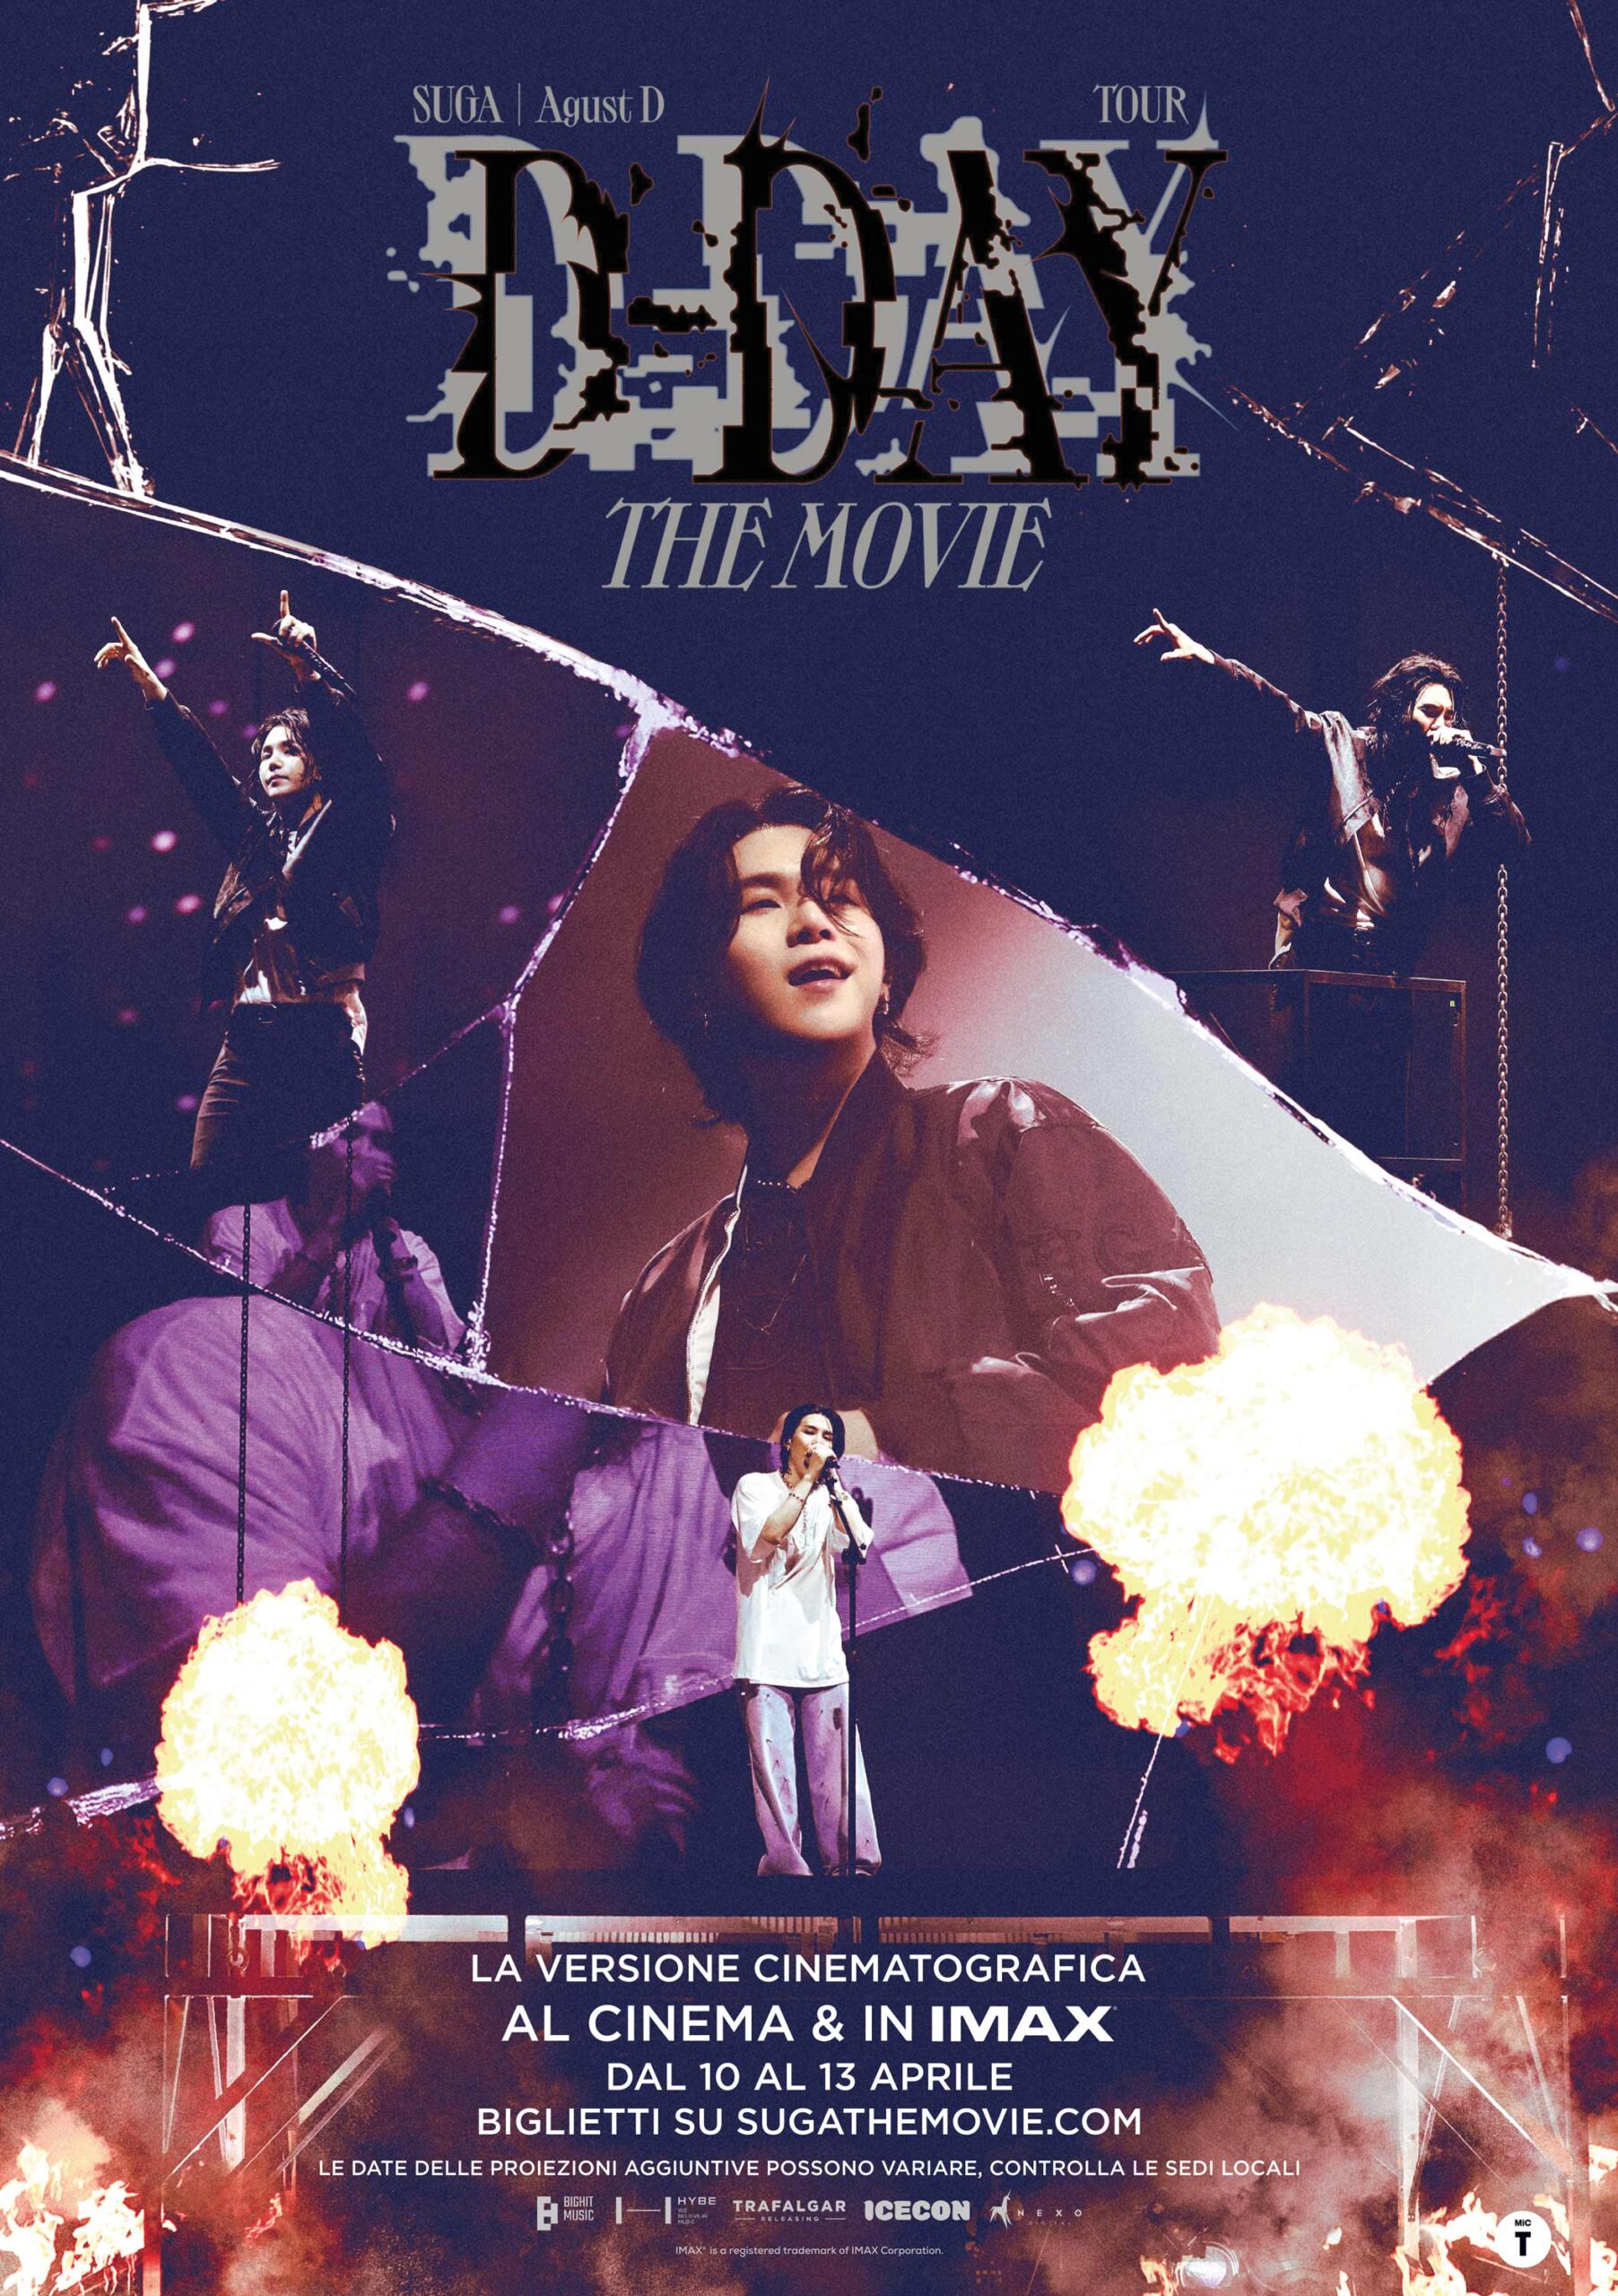 Arriva al cinema  “Suga│ Agust D Tour ‘D-Day’ The Movie”